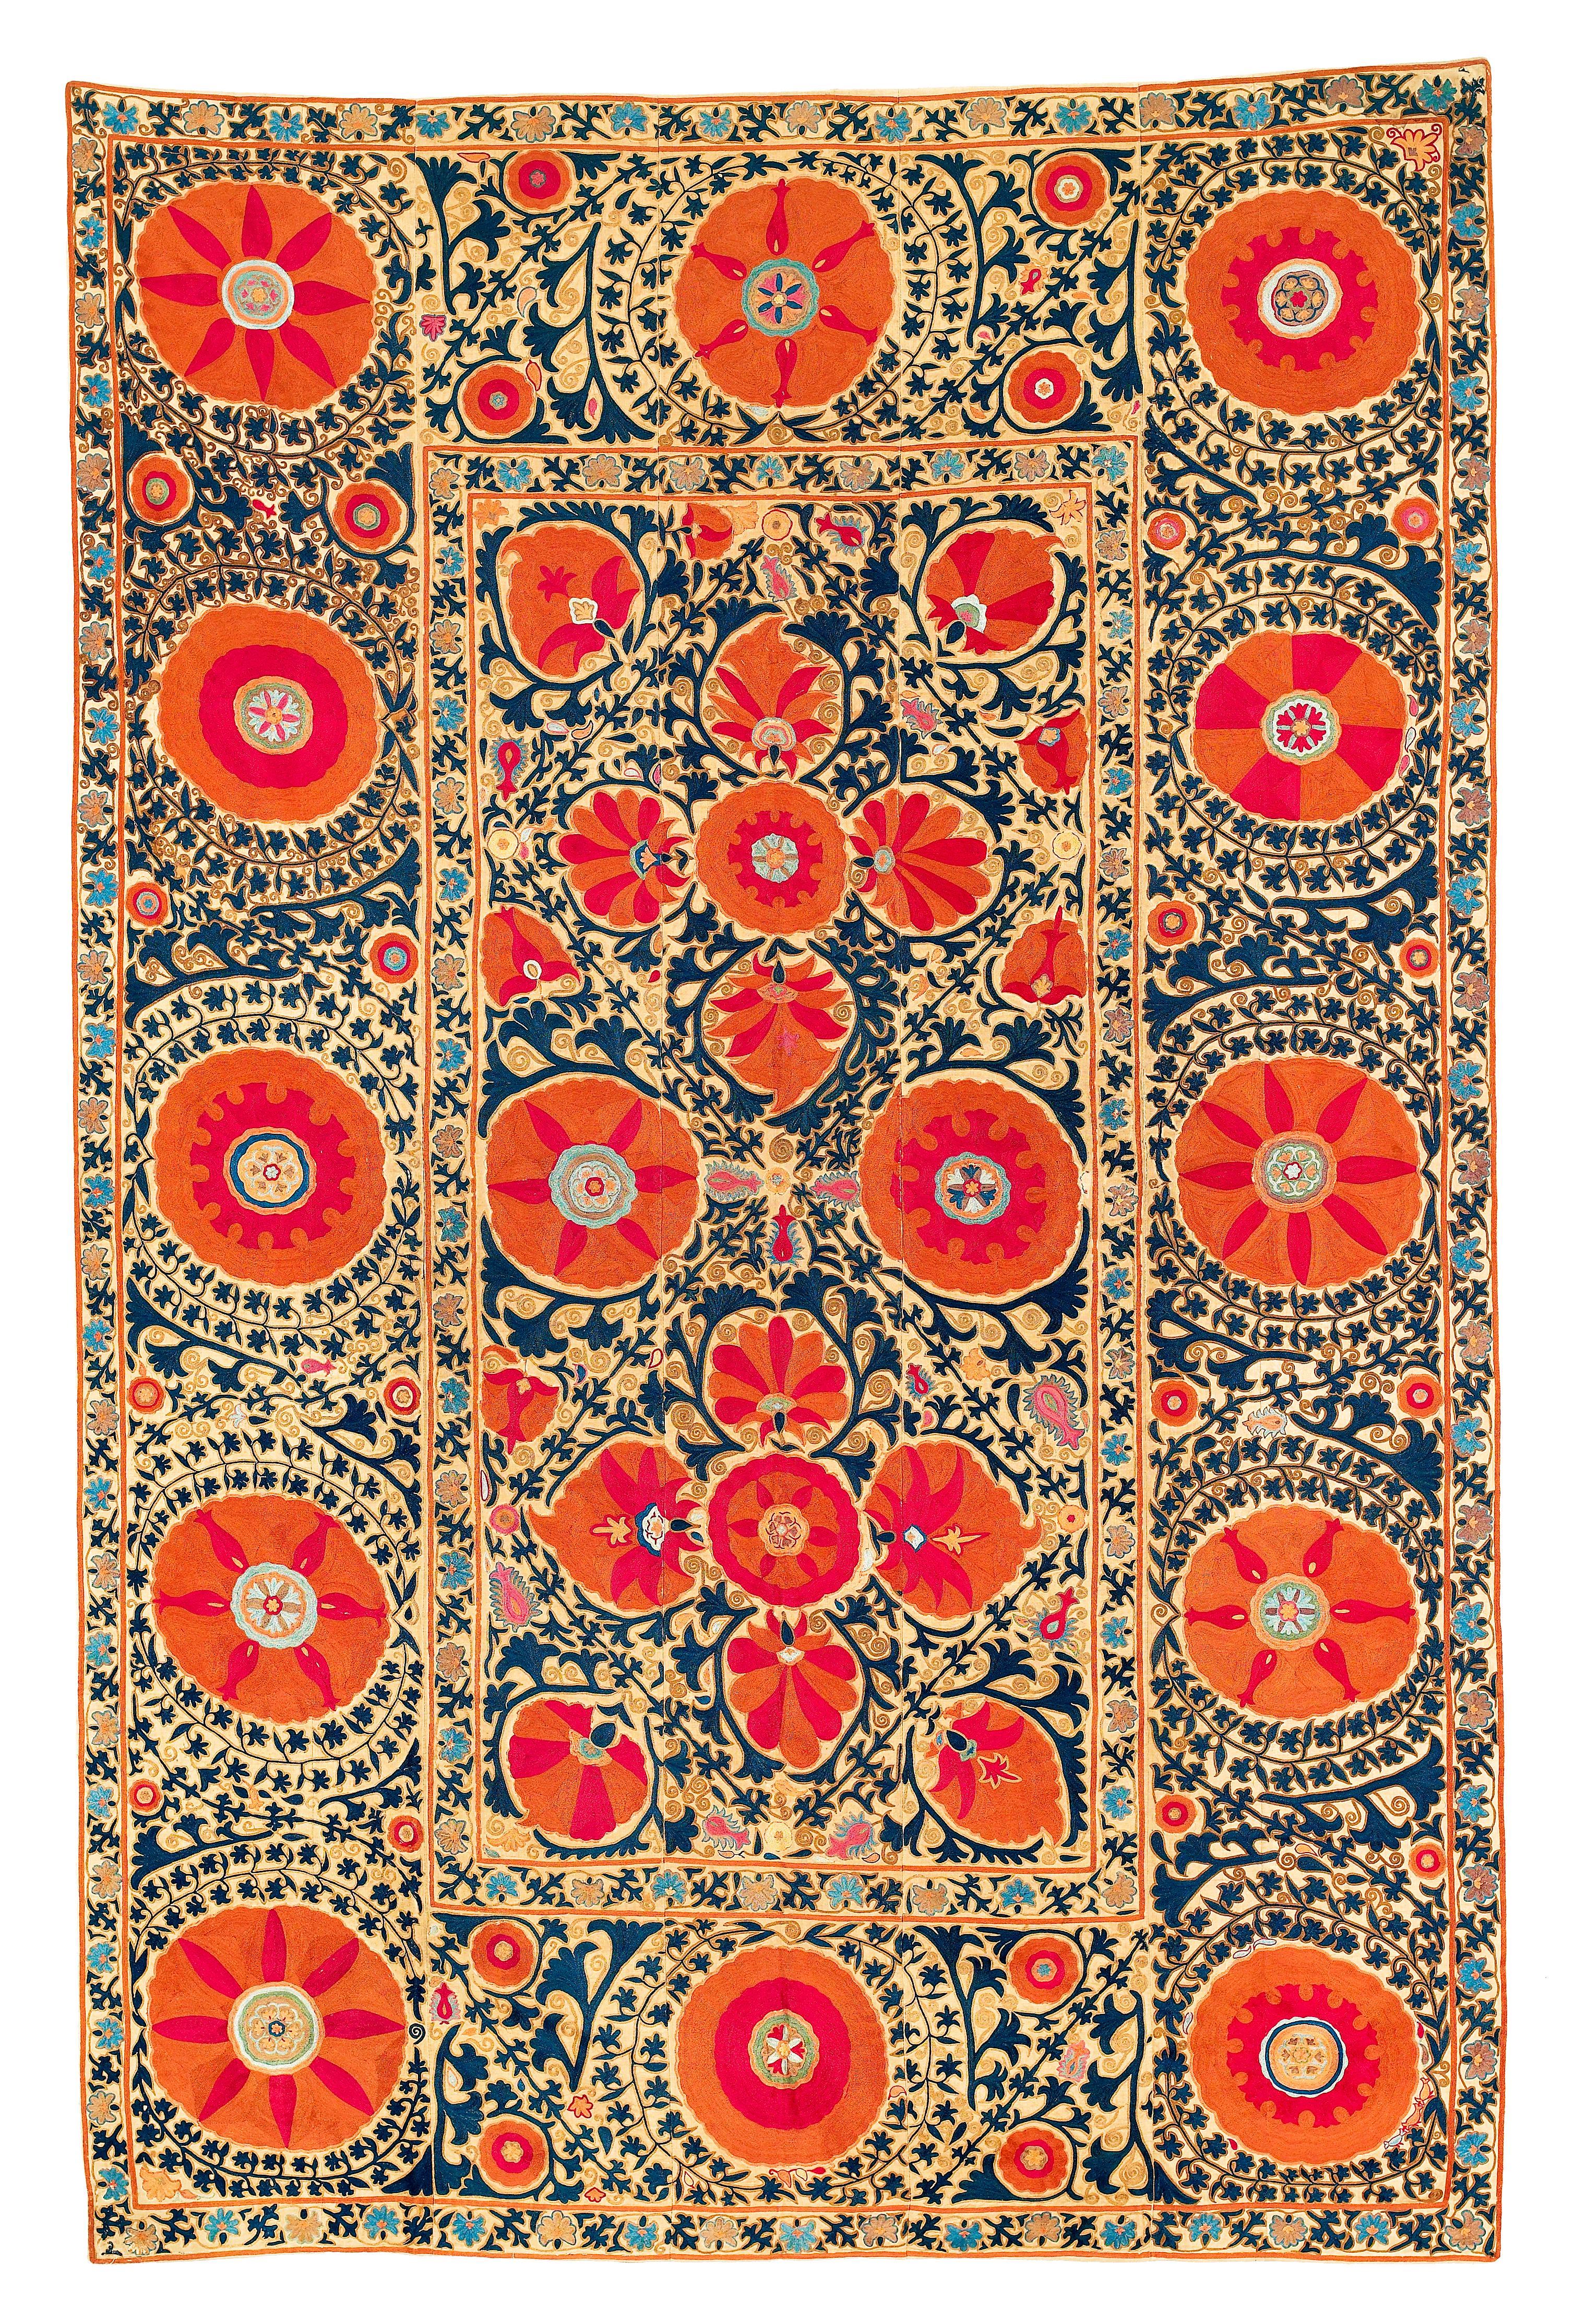 Ottoman Embroidery Patterns Suzani Textile Wikipedia